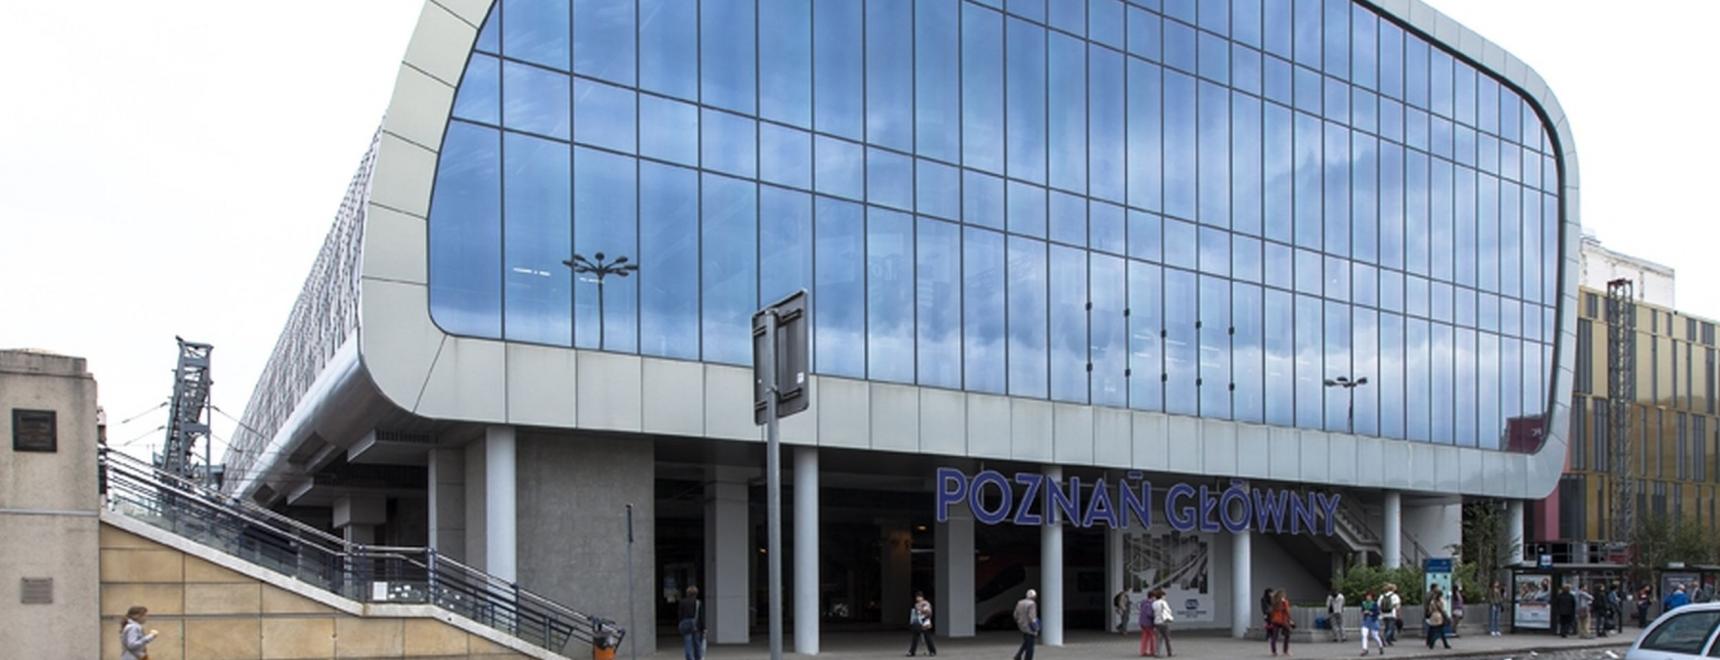 Dworzec Kolejowy Poznań Główny